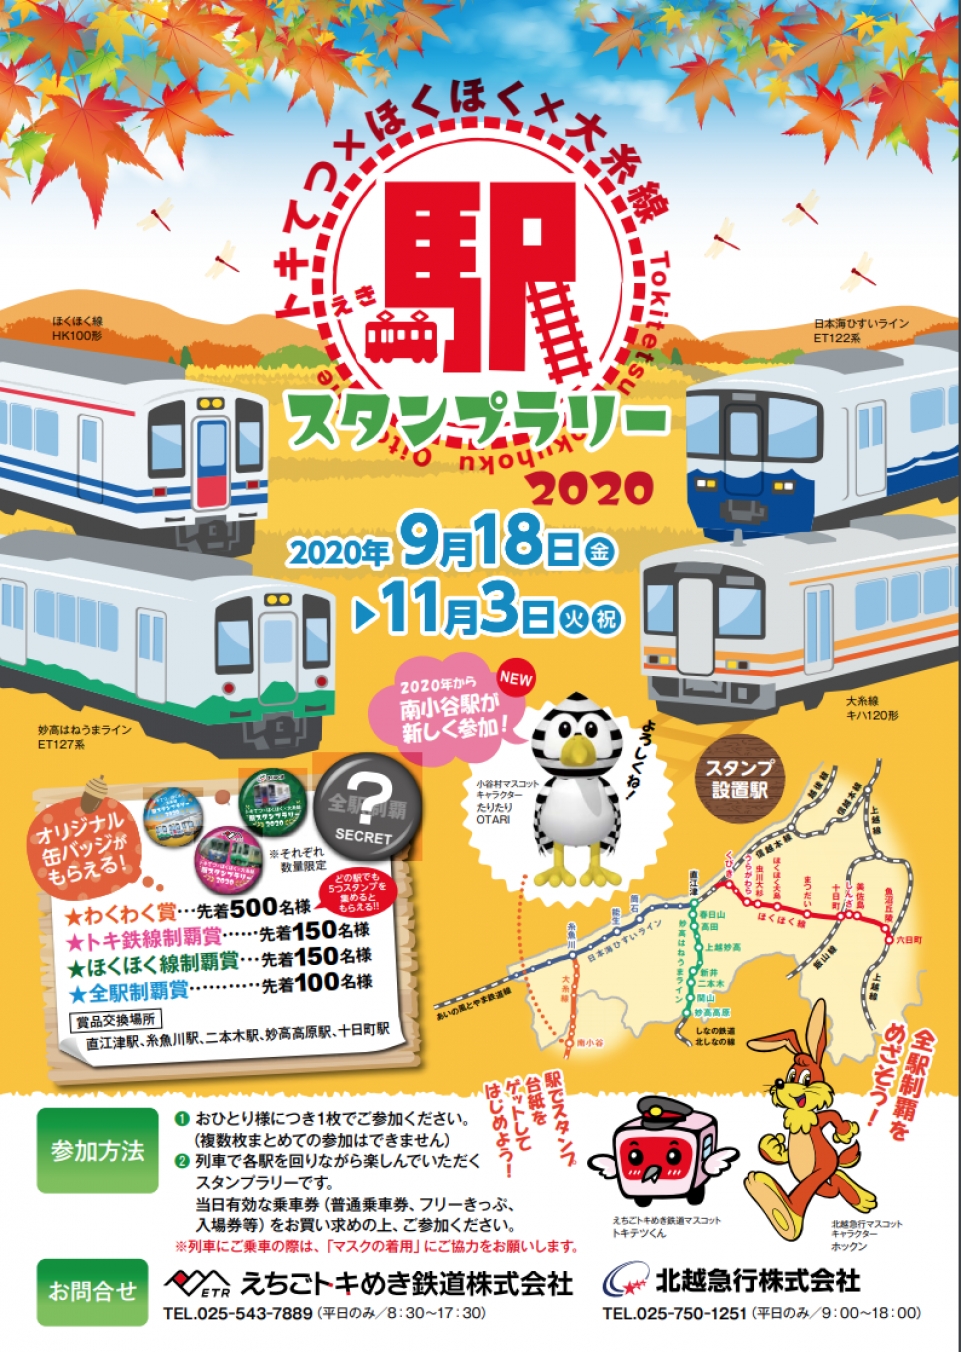 JR西日本 スタンプラリー ニュース・話題 | レイルラボ(RailLab)